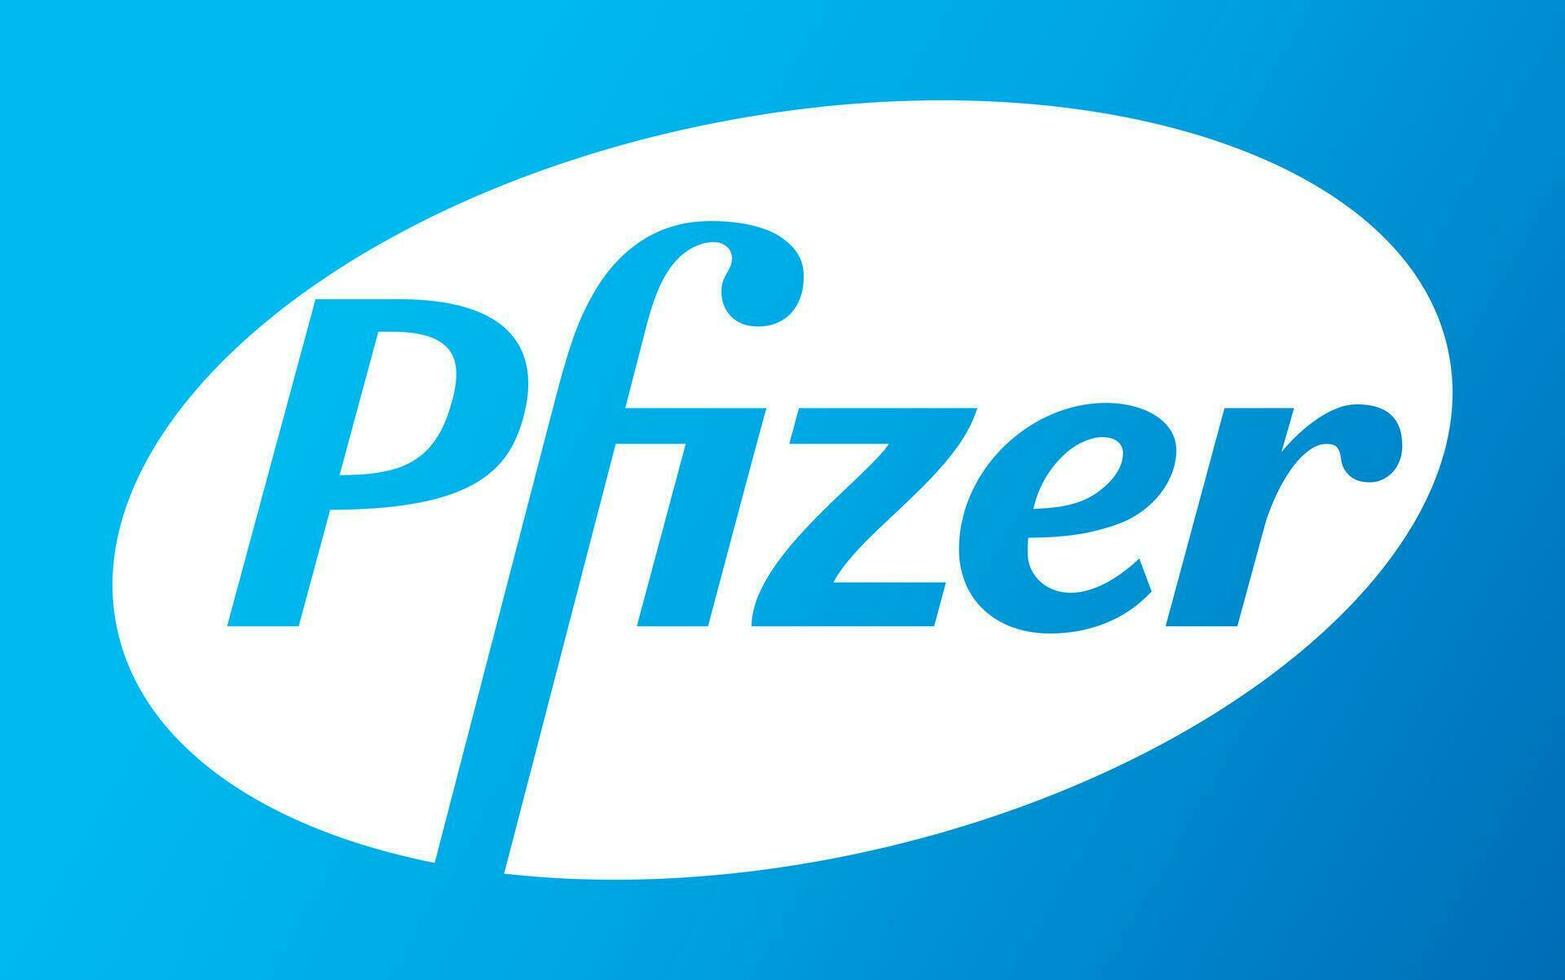 pfizer vektor logotyp - senast blå Färg - amerikan farmaceutisk företag den där forskning och utveckling vacciner och medicinsk Produkter. apotek laboratorium.